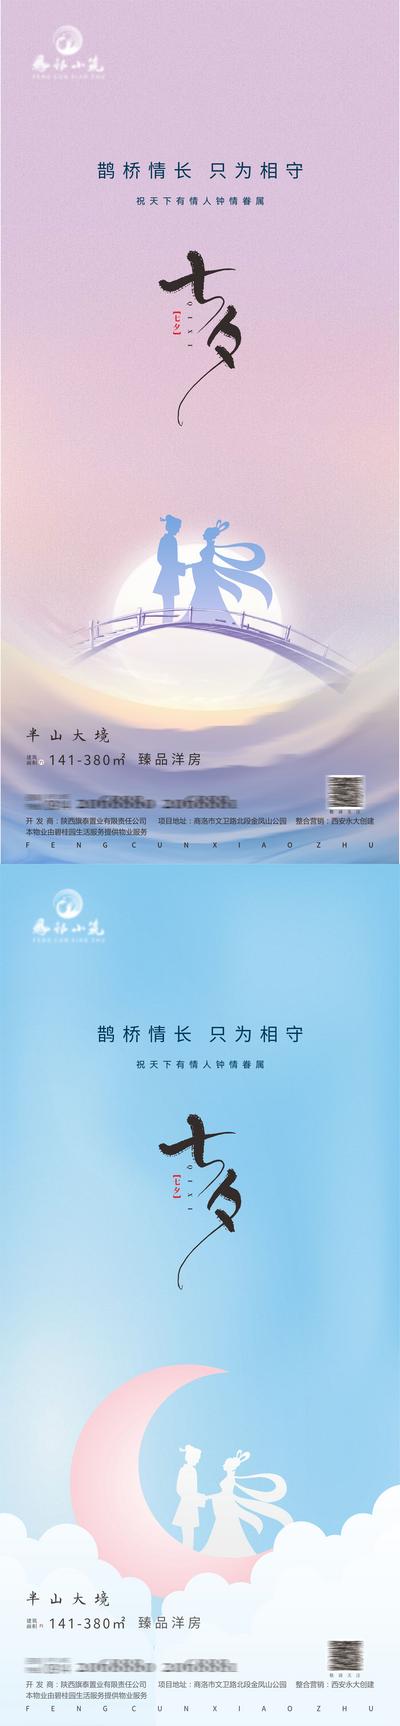 南门网 海报 房地产 中国传统节日 七夕 牛郎织女 鹊桥